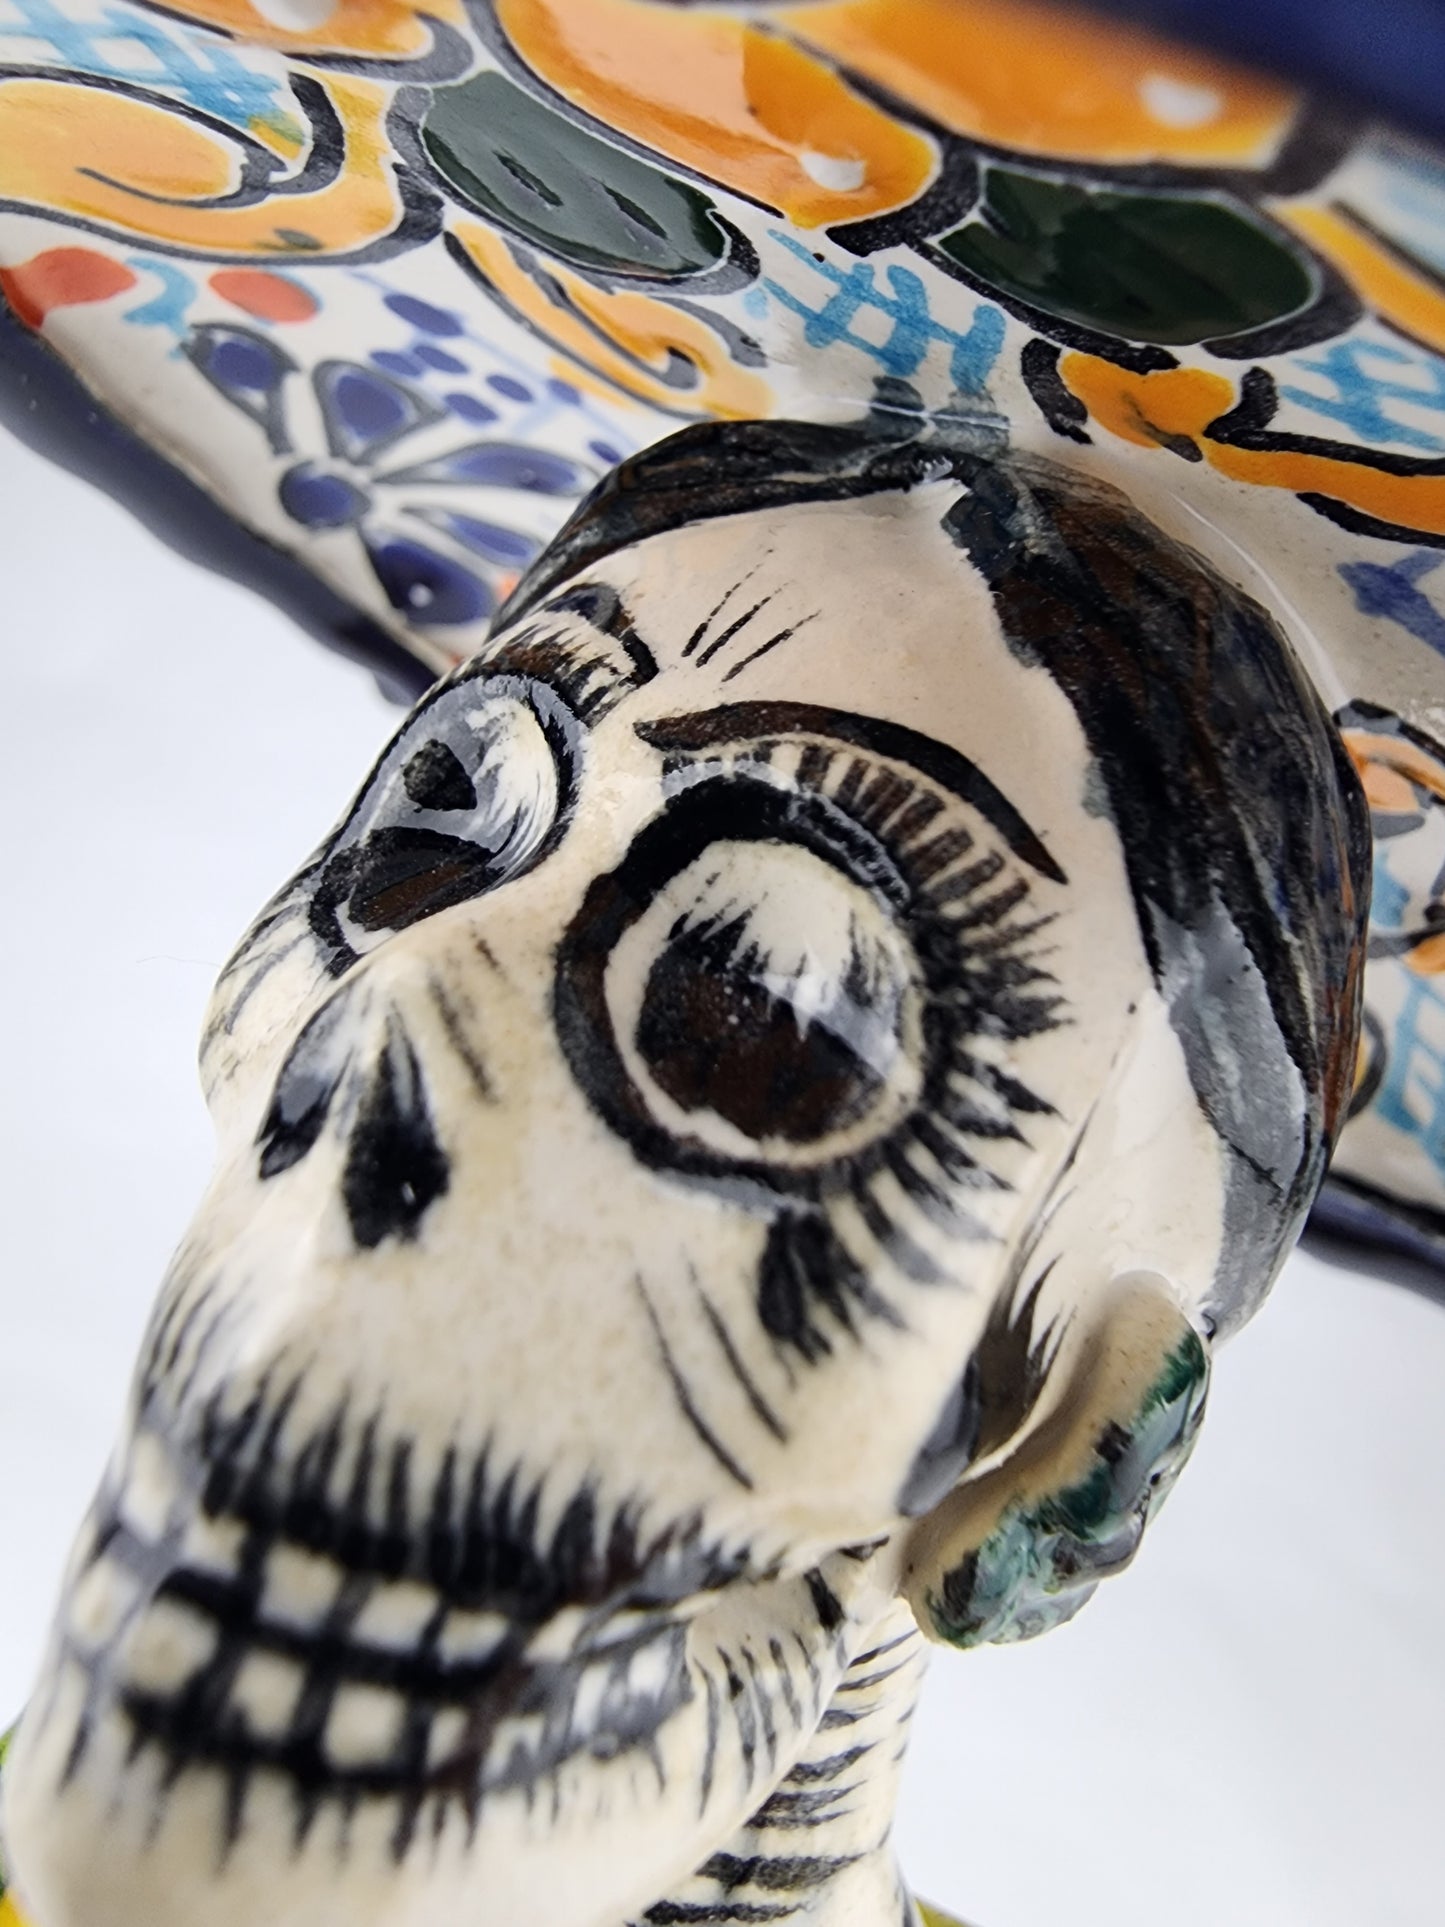 Authentic Día de los Muertos Catrina Figurine Handcrafted Mexican Folk Art